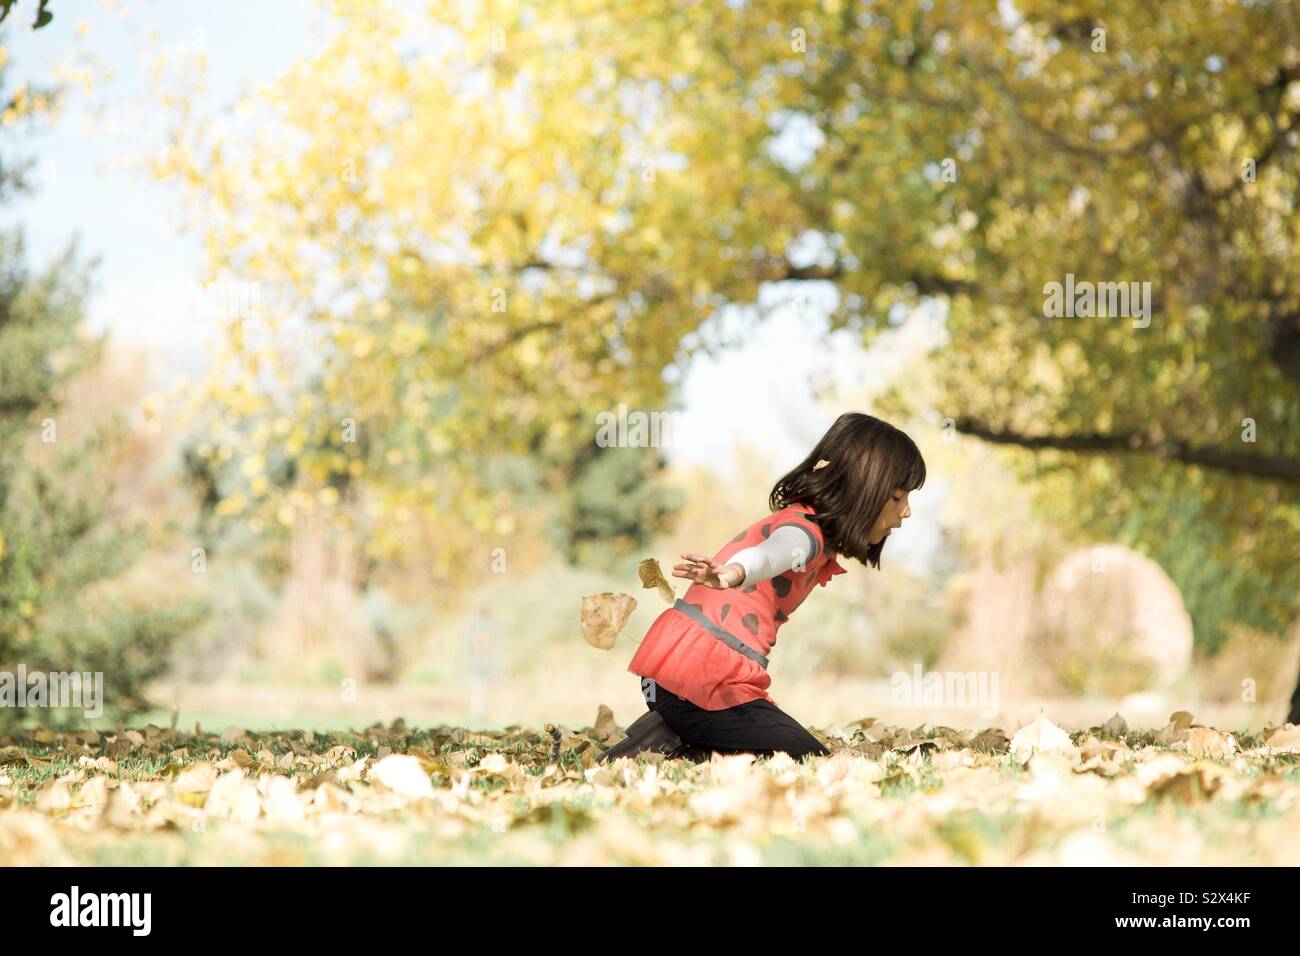 Fille jouant avec les feuilles d'automne Banque D'Images